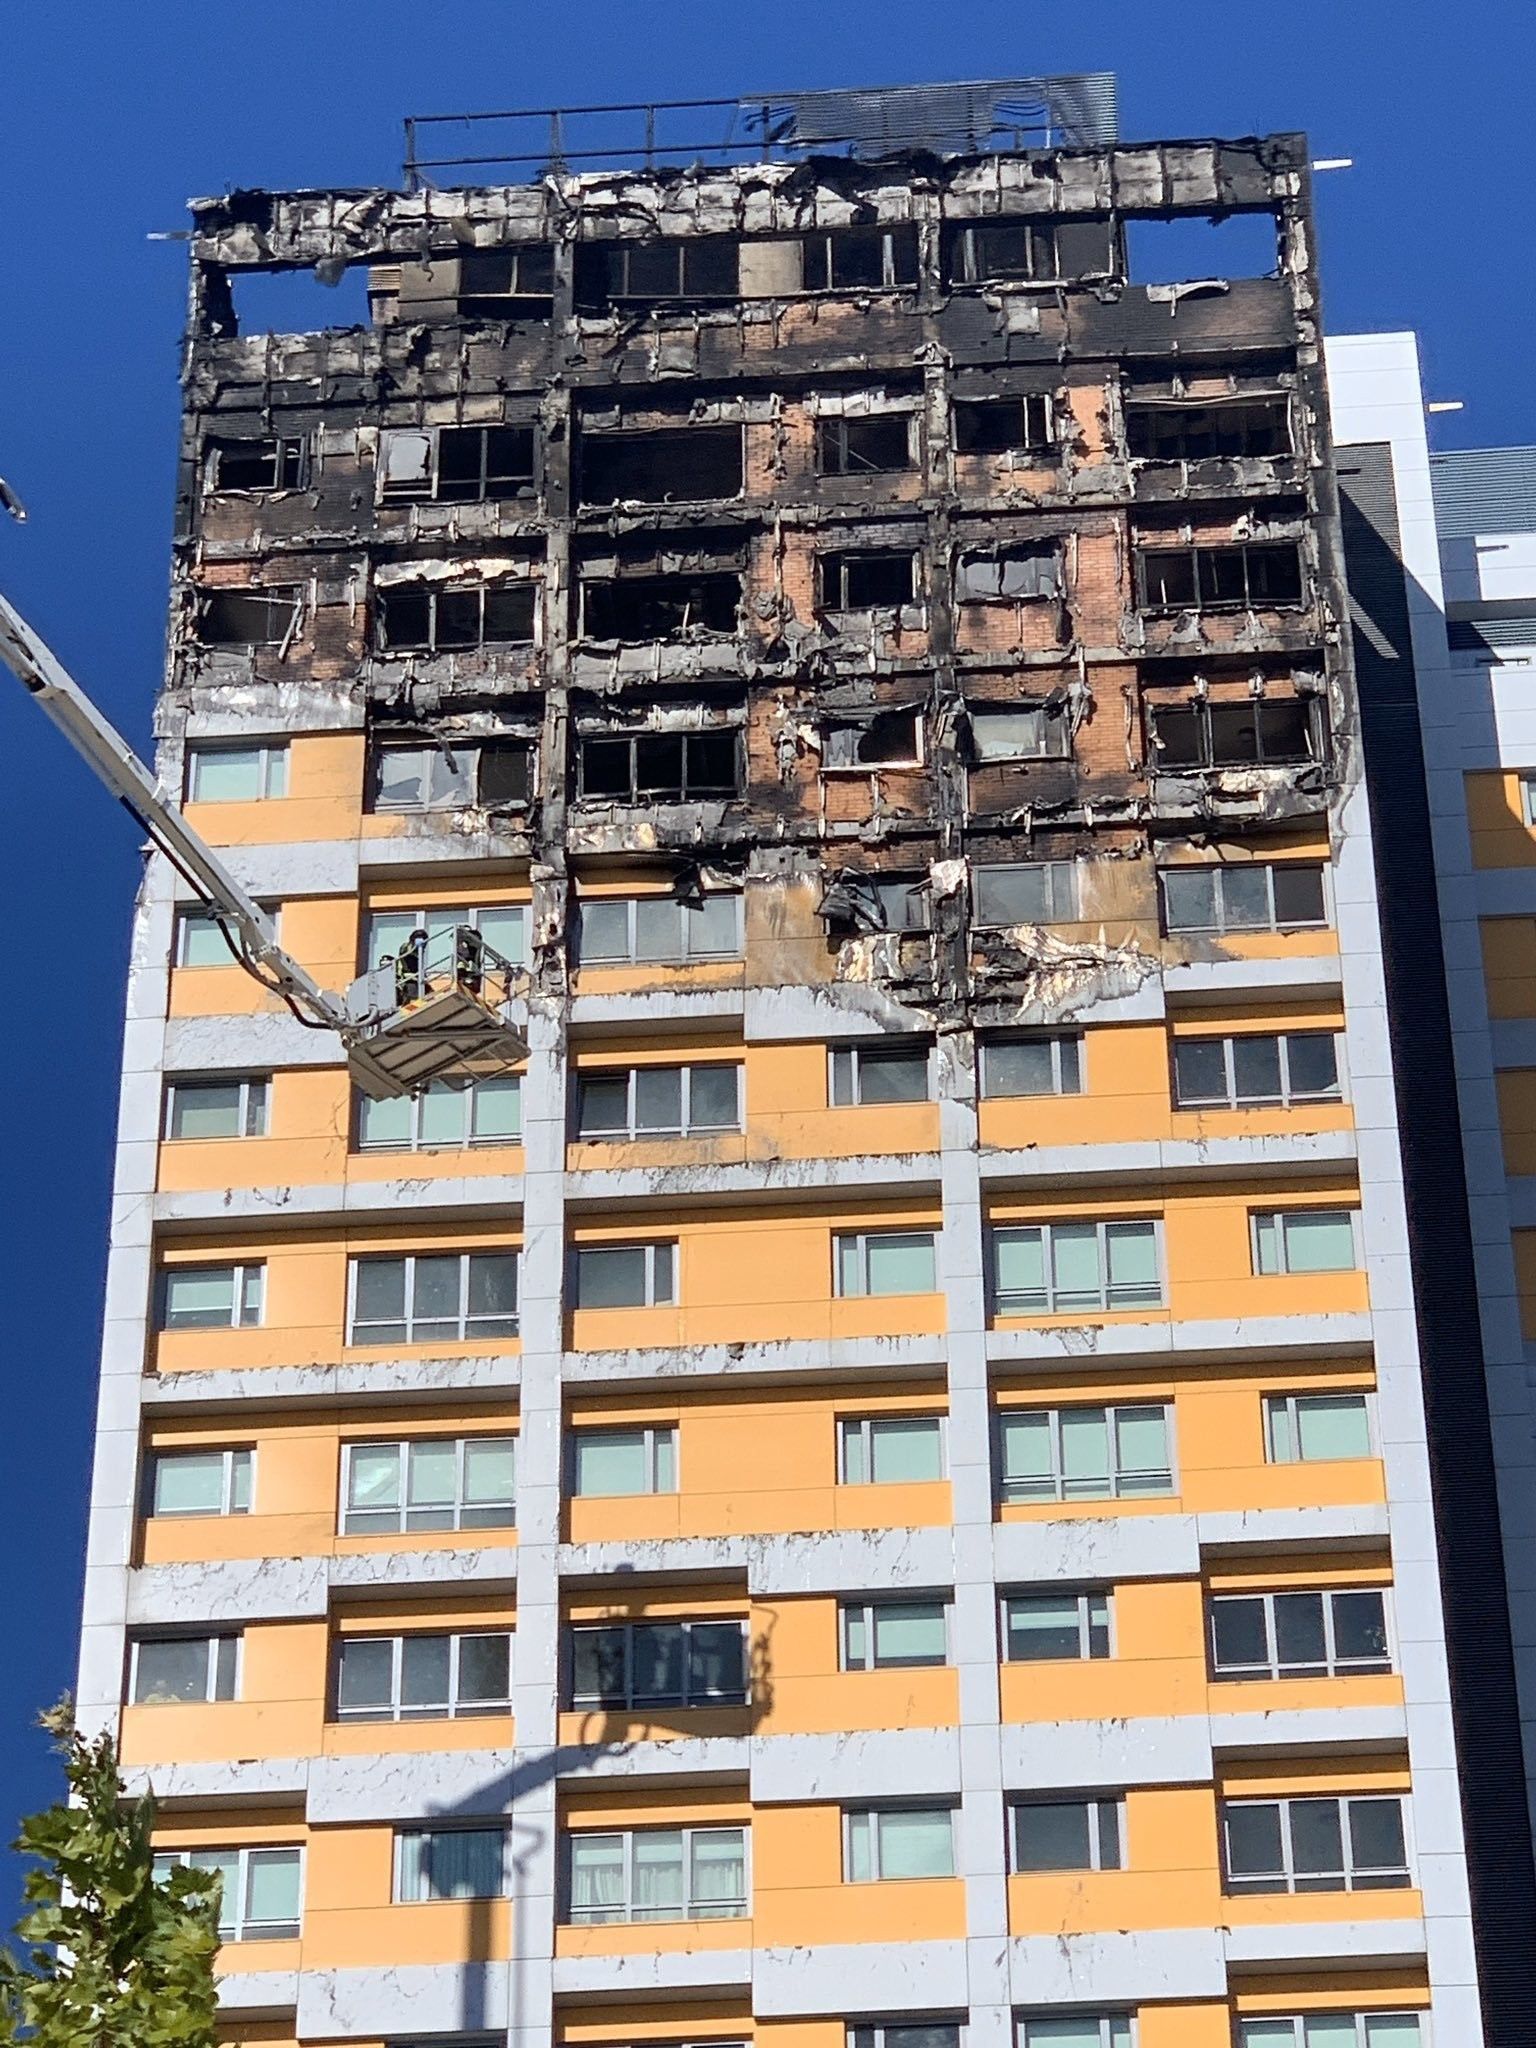 Extinguido un aparatoso incendio en un bloque de viviendas en el distrito de Hortaleza